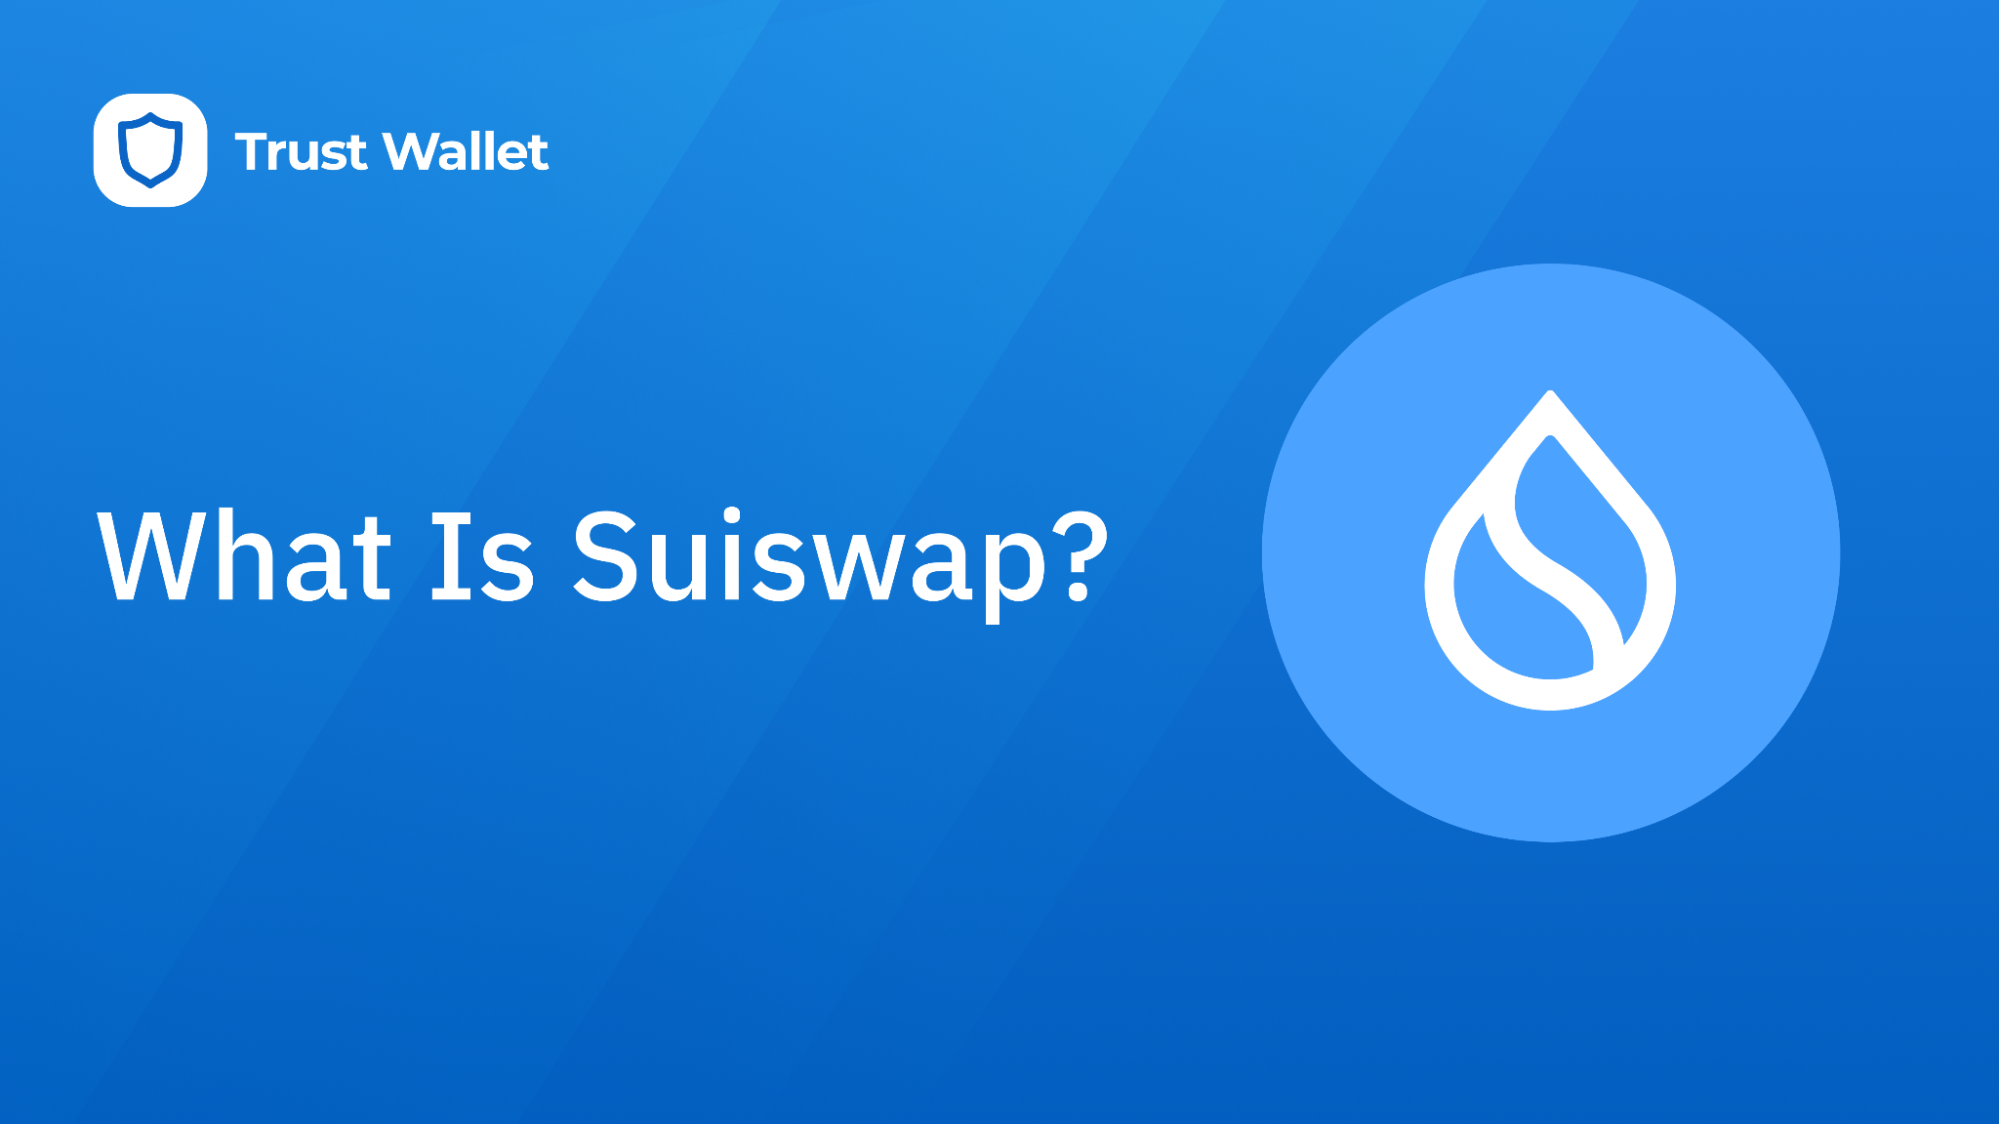 What Is Suiswap?